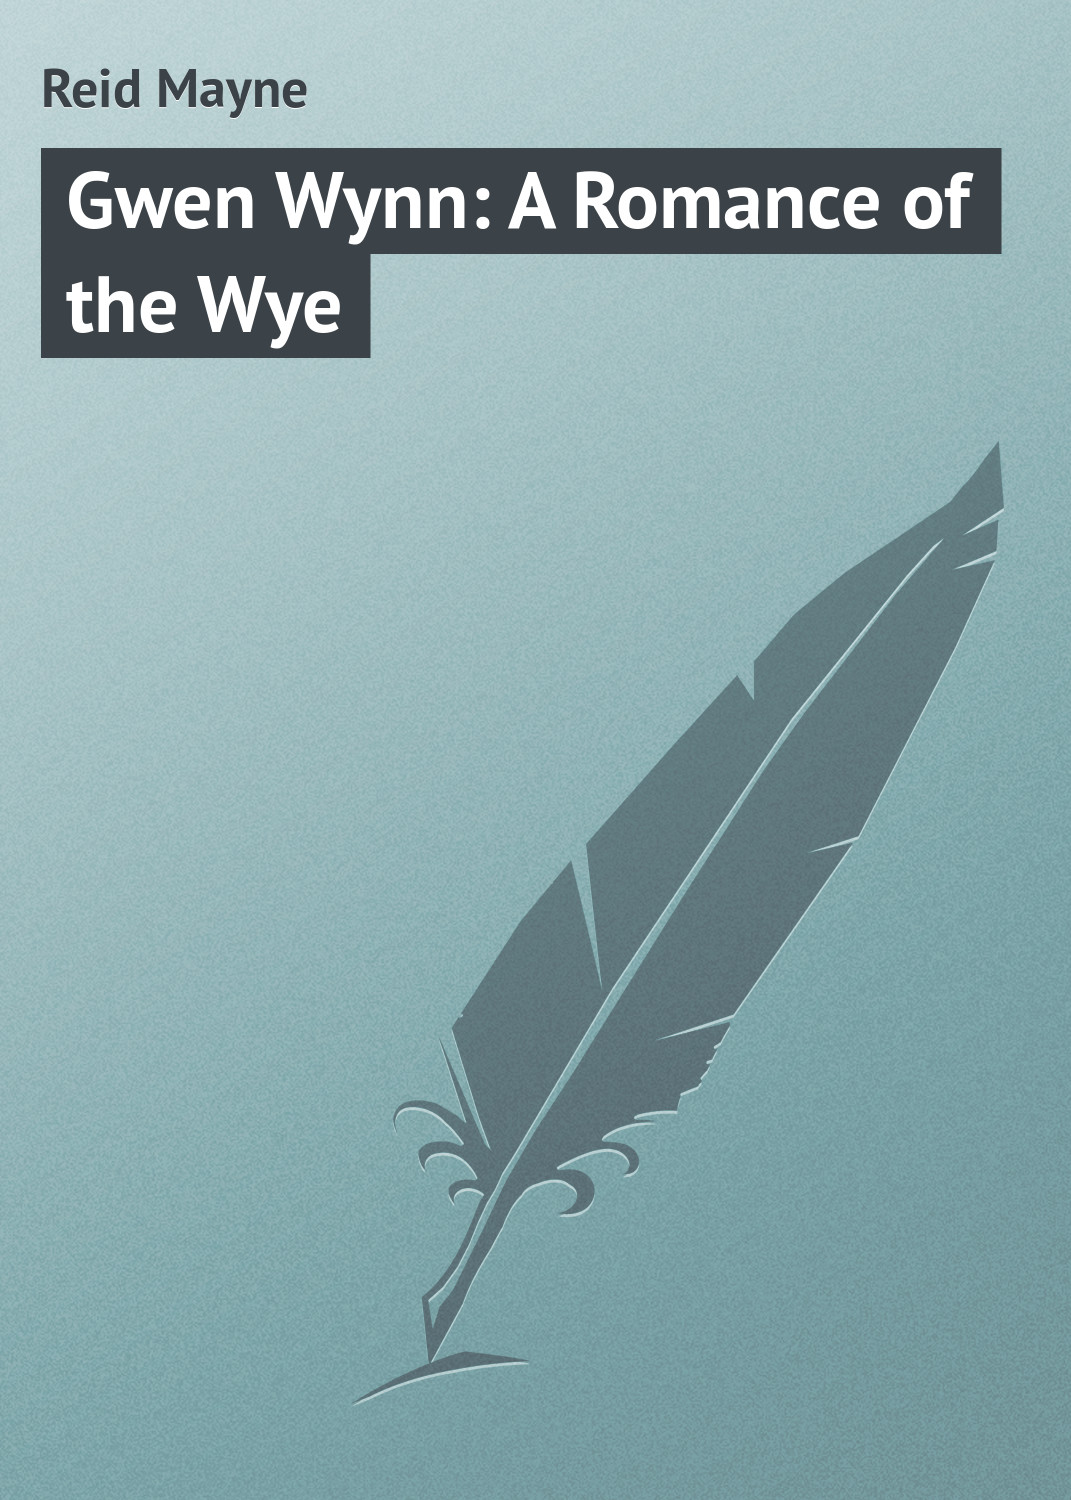 Книга Gwen Wynn: A Romance of the Wye из серии , созданная Mayne Reid, может относится к жанру Зарубежная классика, Зарубежные детские книги. Стоимость электронной книги Gwen Wynn: A Romance of the Wye с идентификатором 23149043 составляет 5.99 руб.